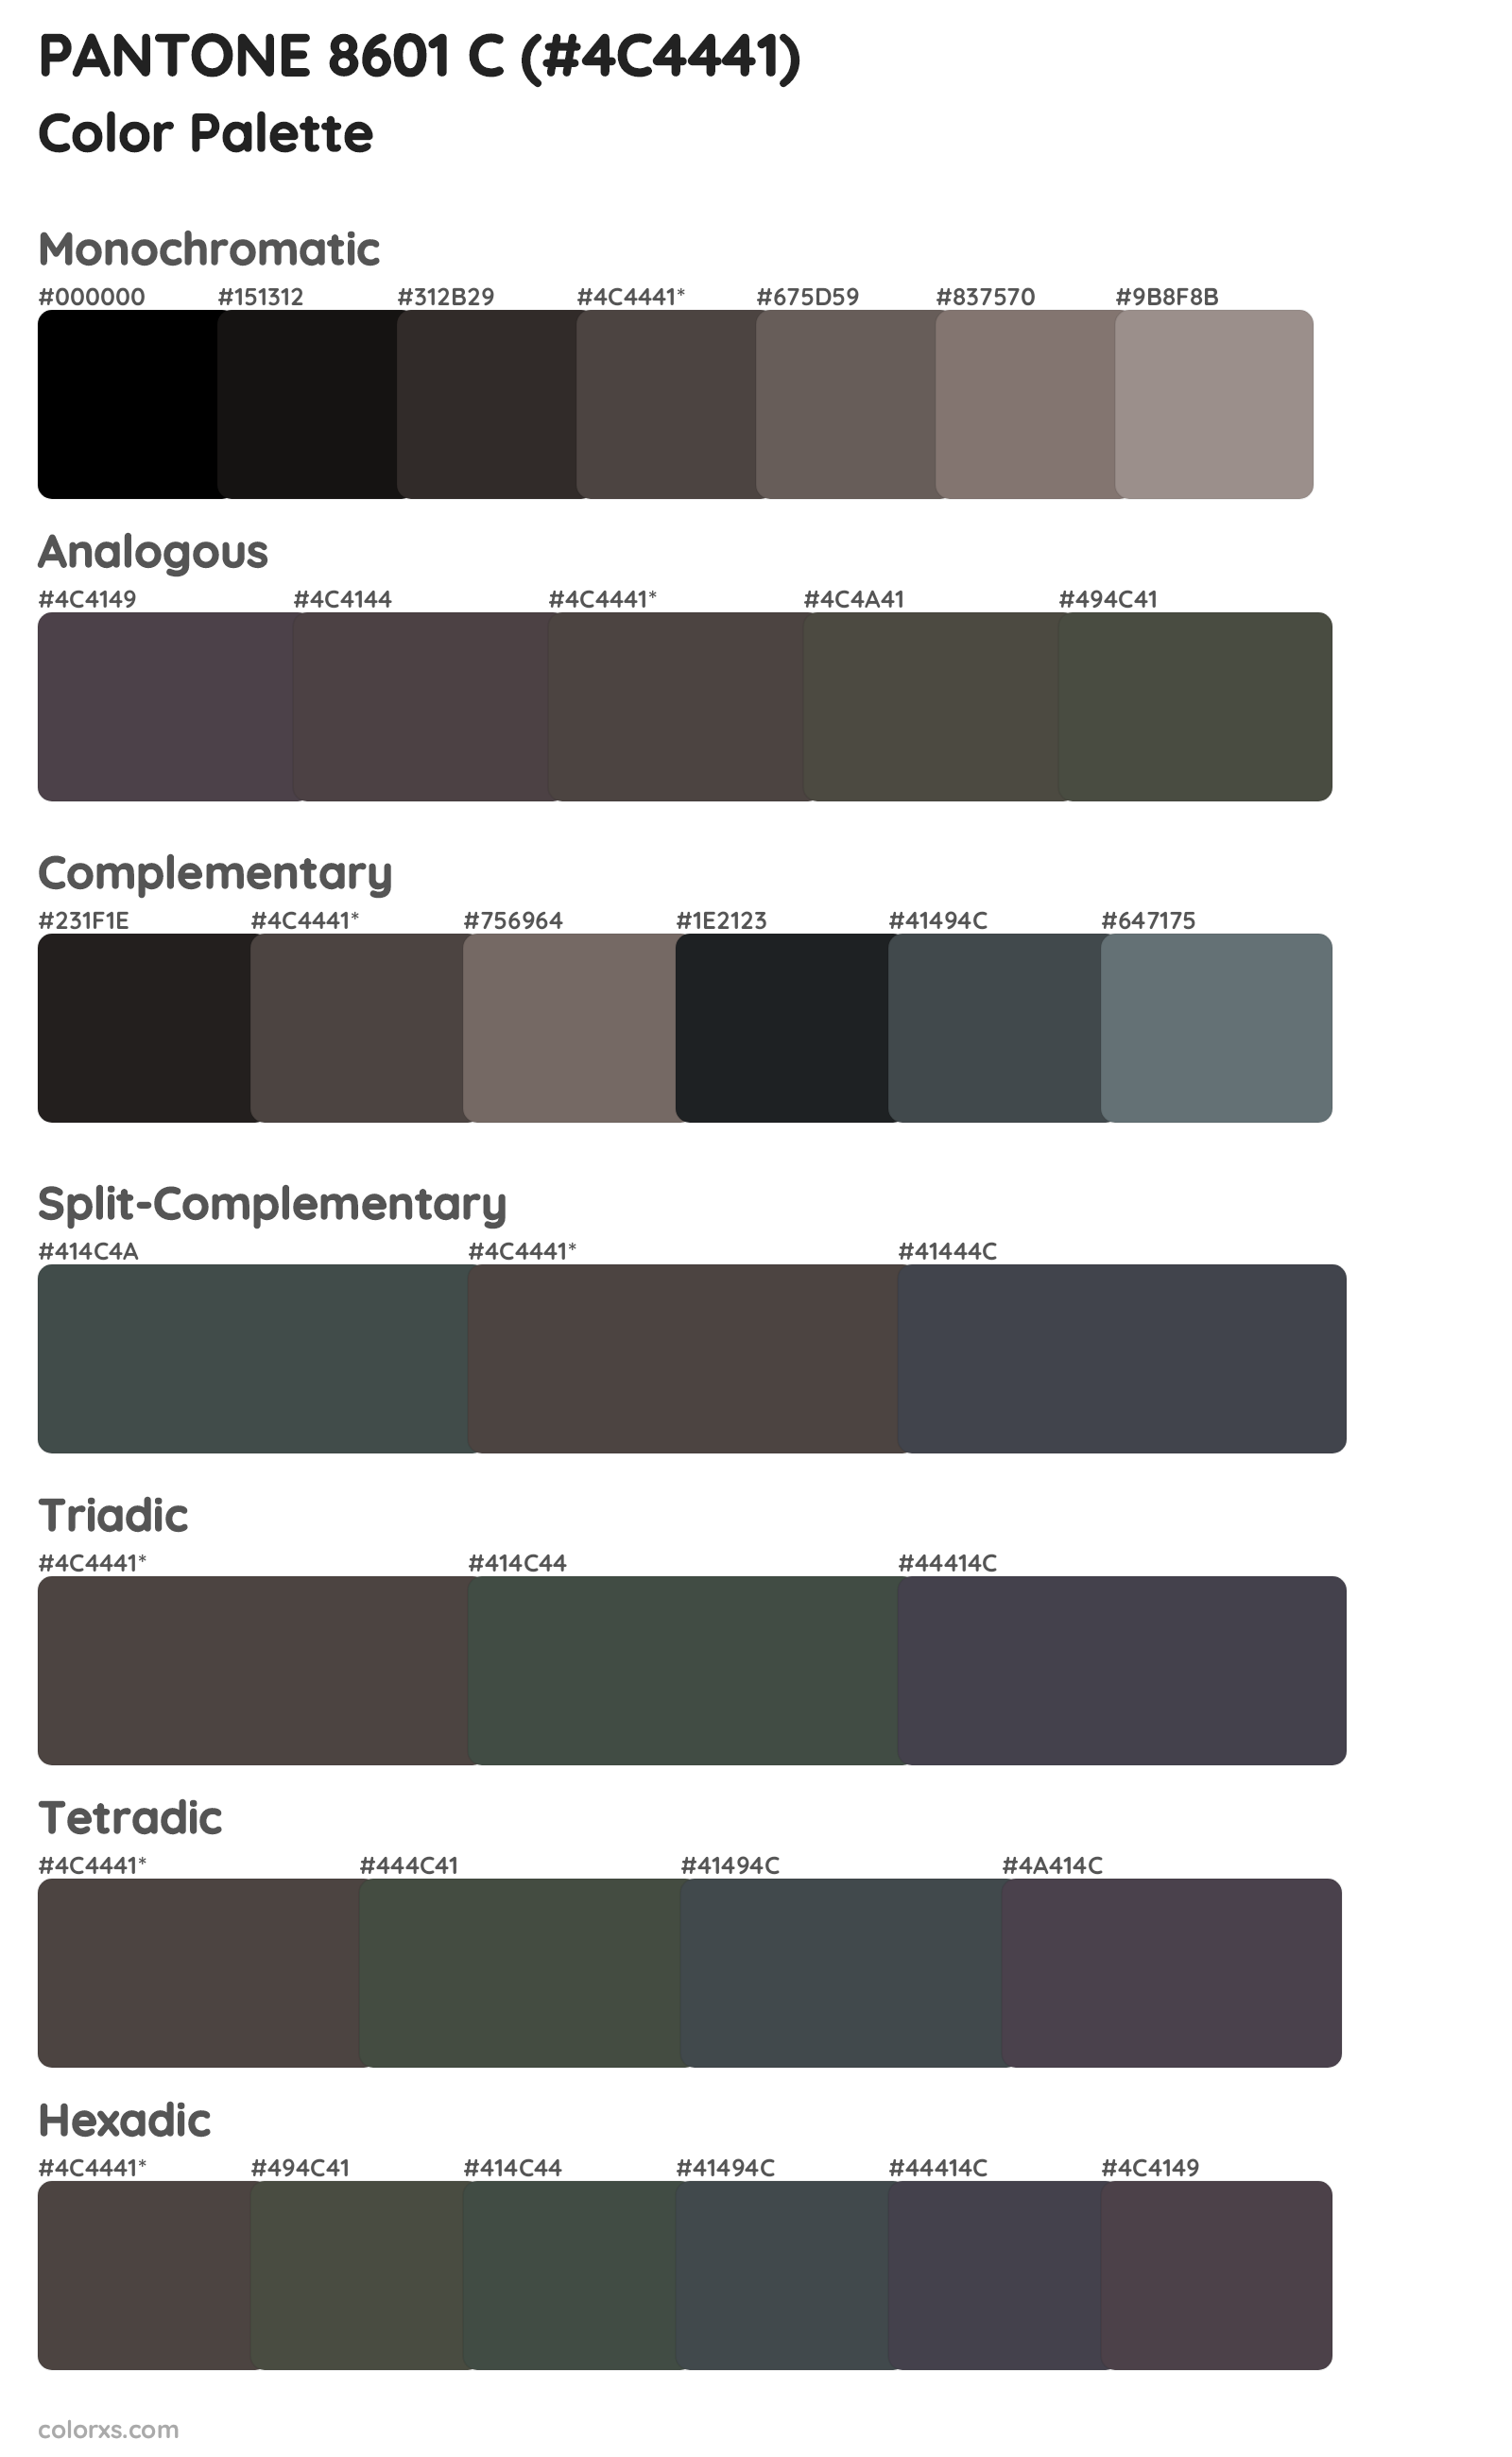 PANTONE 8601 C Color Scheme Palettes